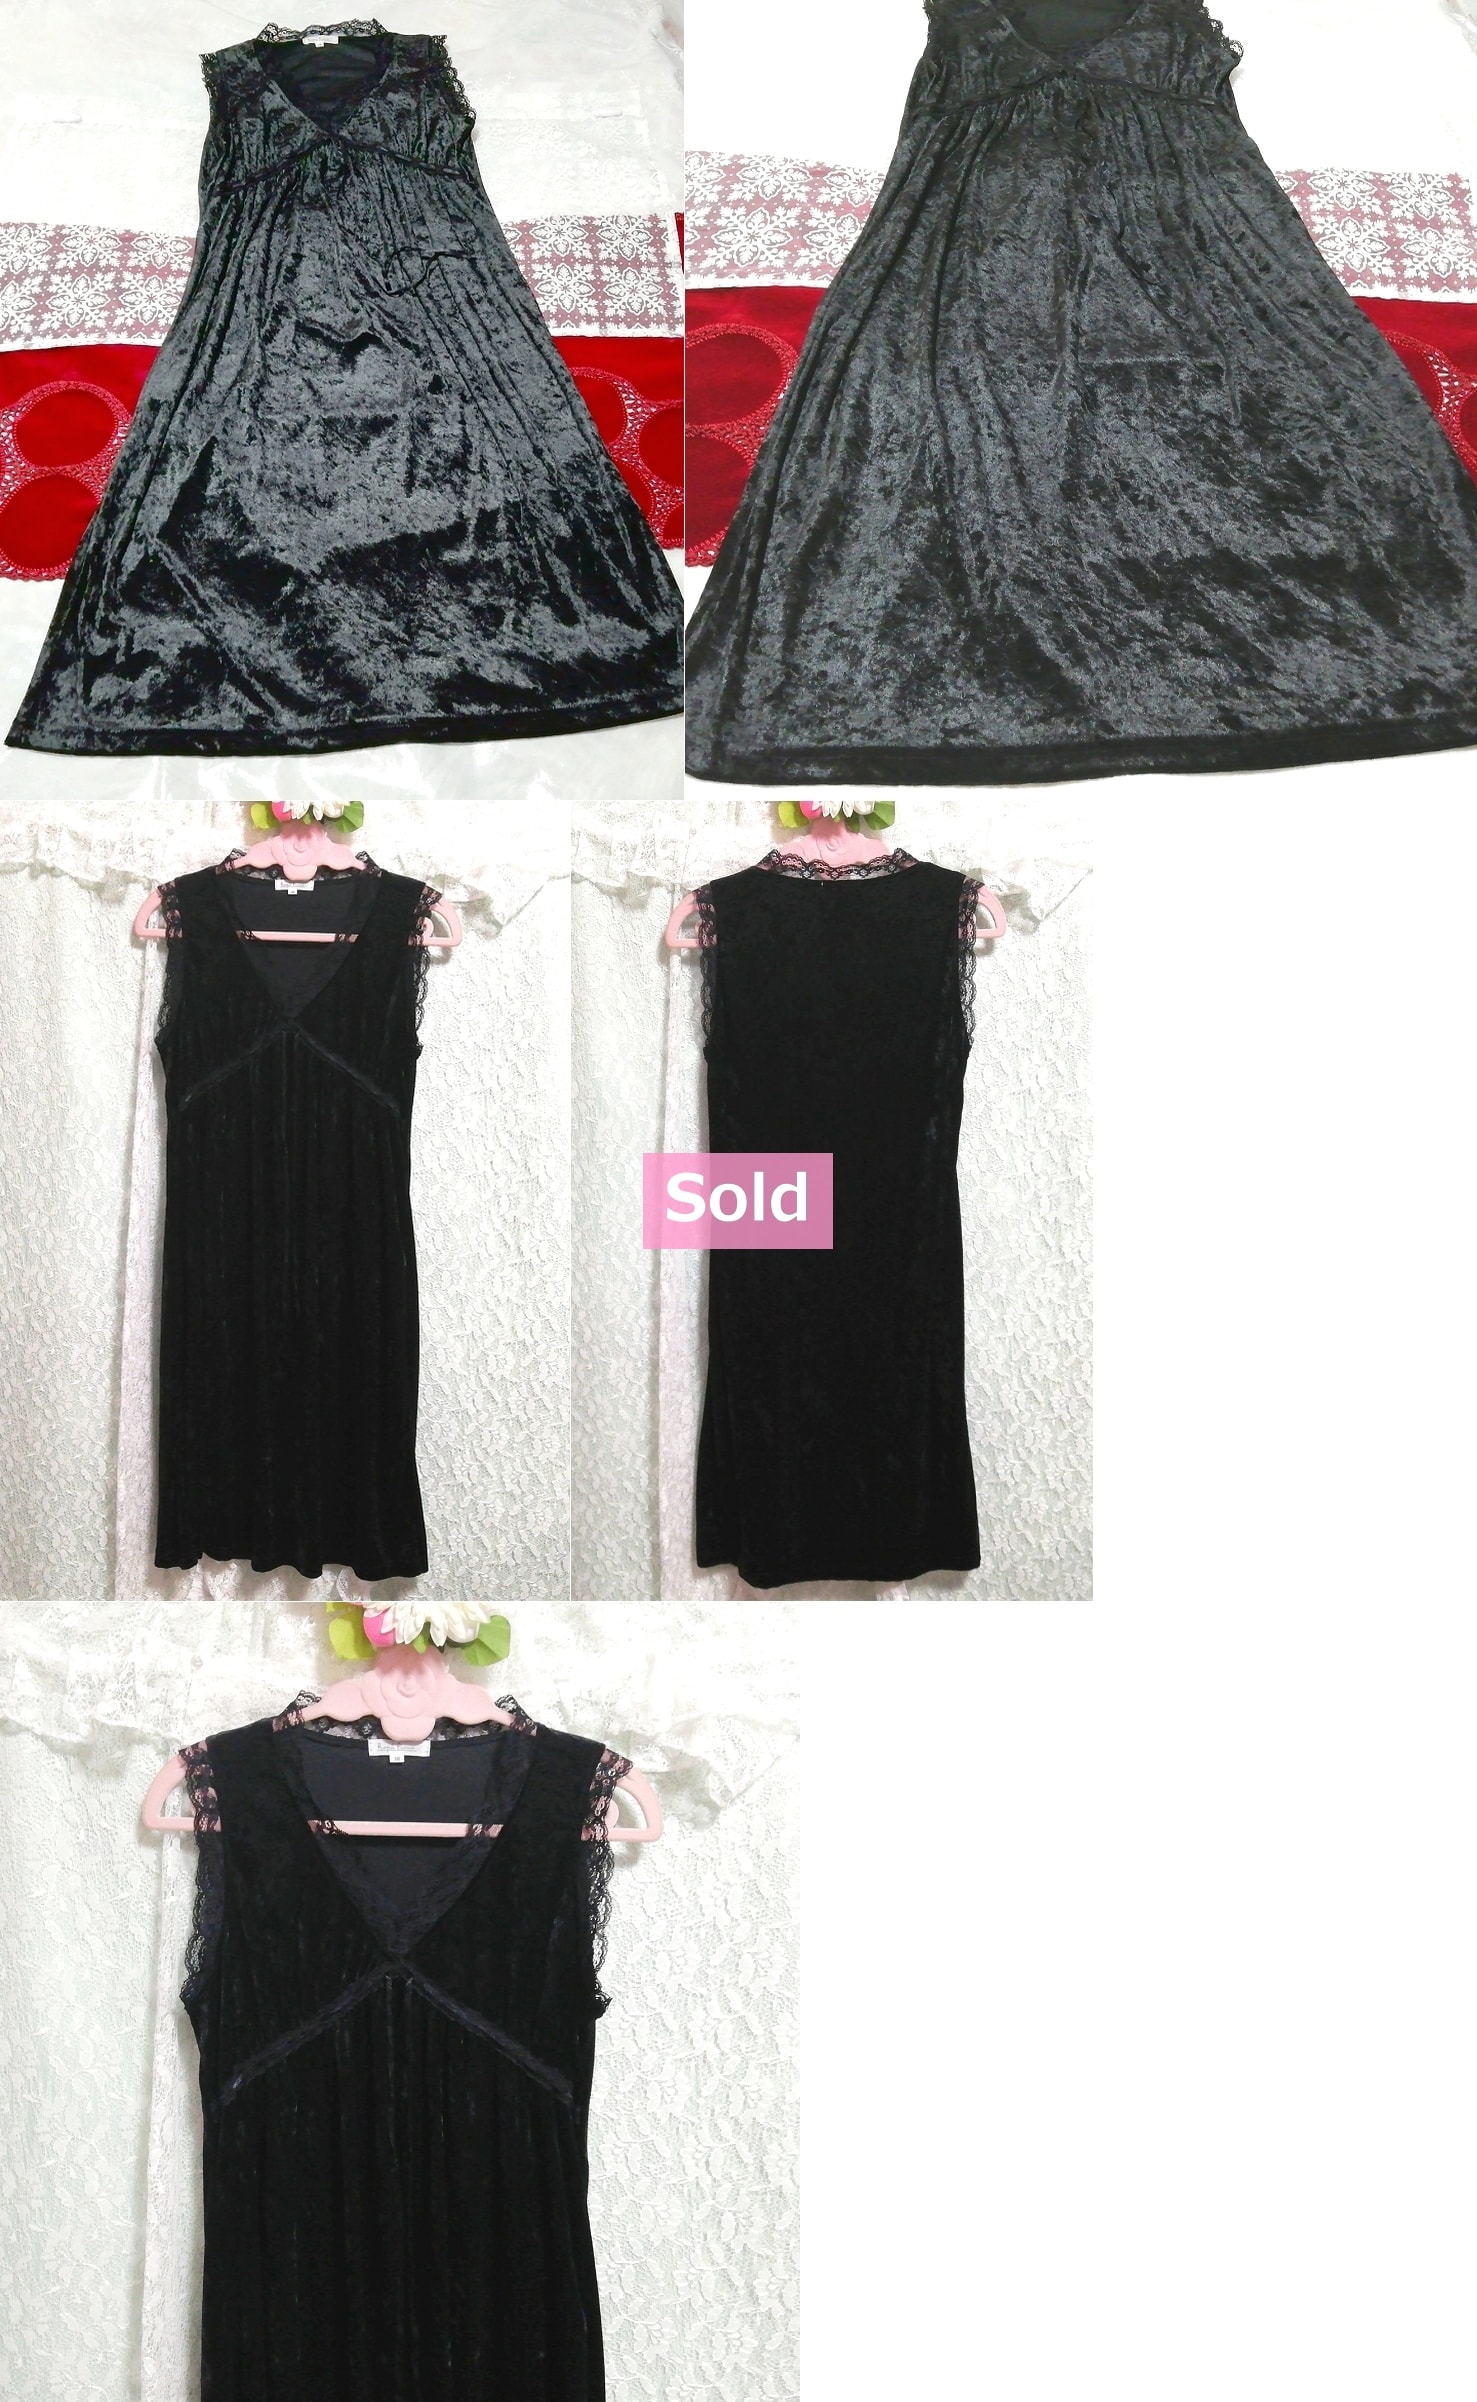 블랙 레이스 벨루어 네글리제 잠옷 잠옷 민소매 드레스, 패션, 숙녀 패션, 잠옷, 잠옷